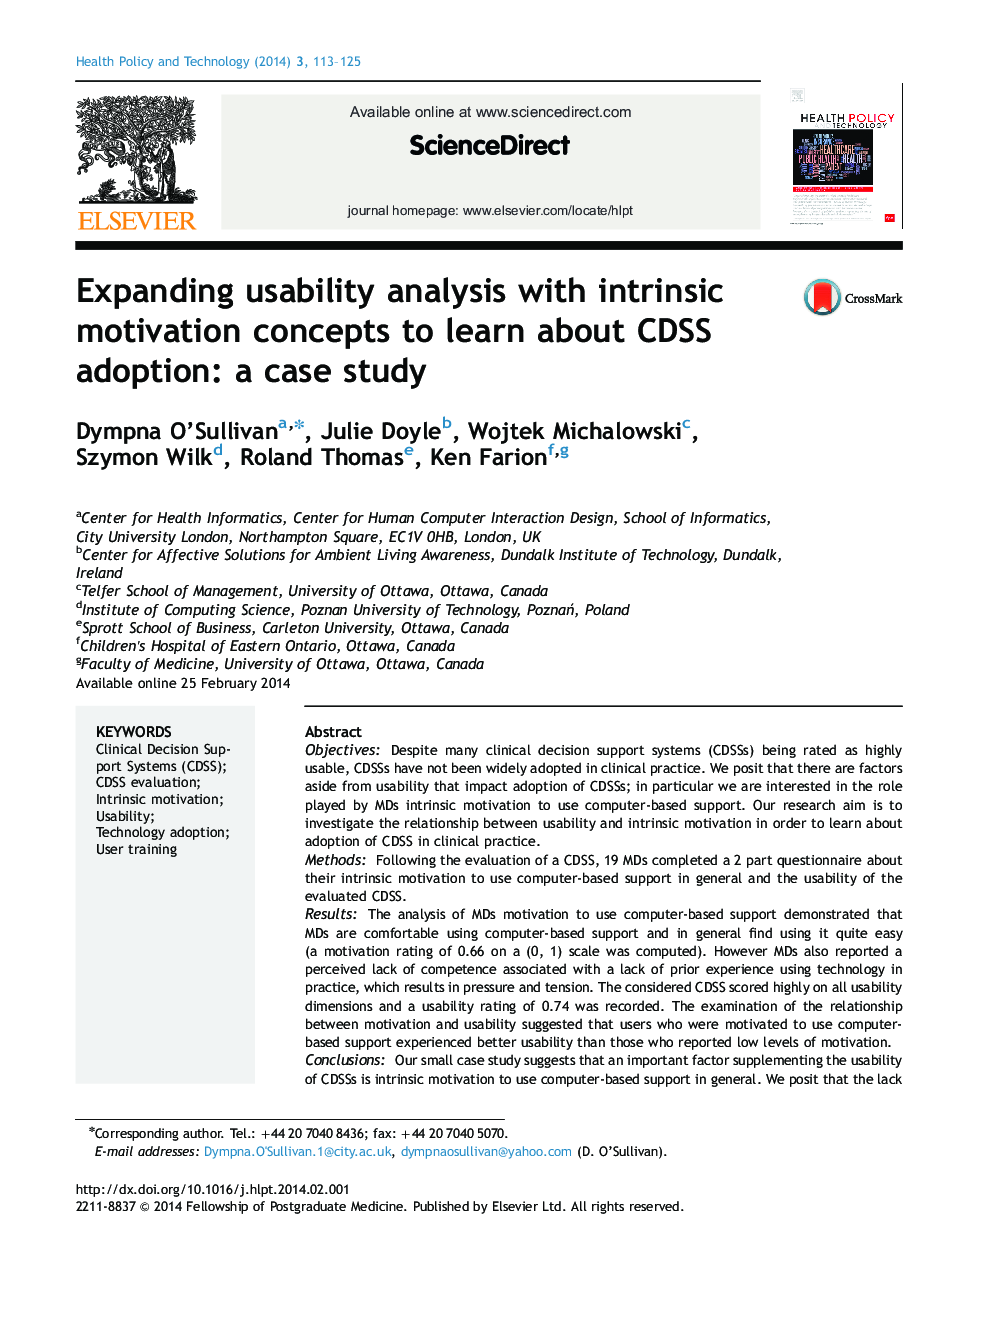 توسعه تجزیه و تحلیل قابلیت استفاده با مفاهیم انگیزشی ذاتی برای یادگیری در مورد پذیرش CDSS: مطالعه موردی